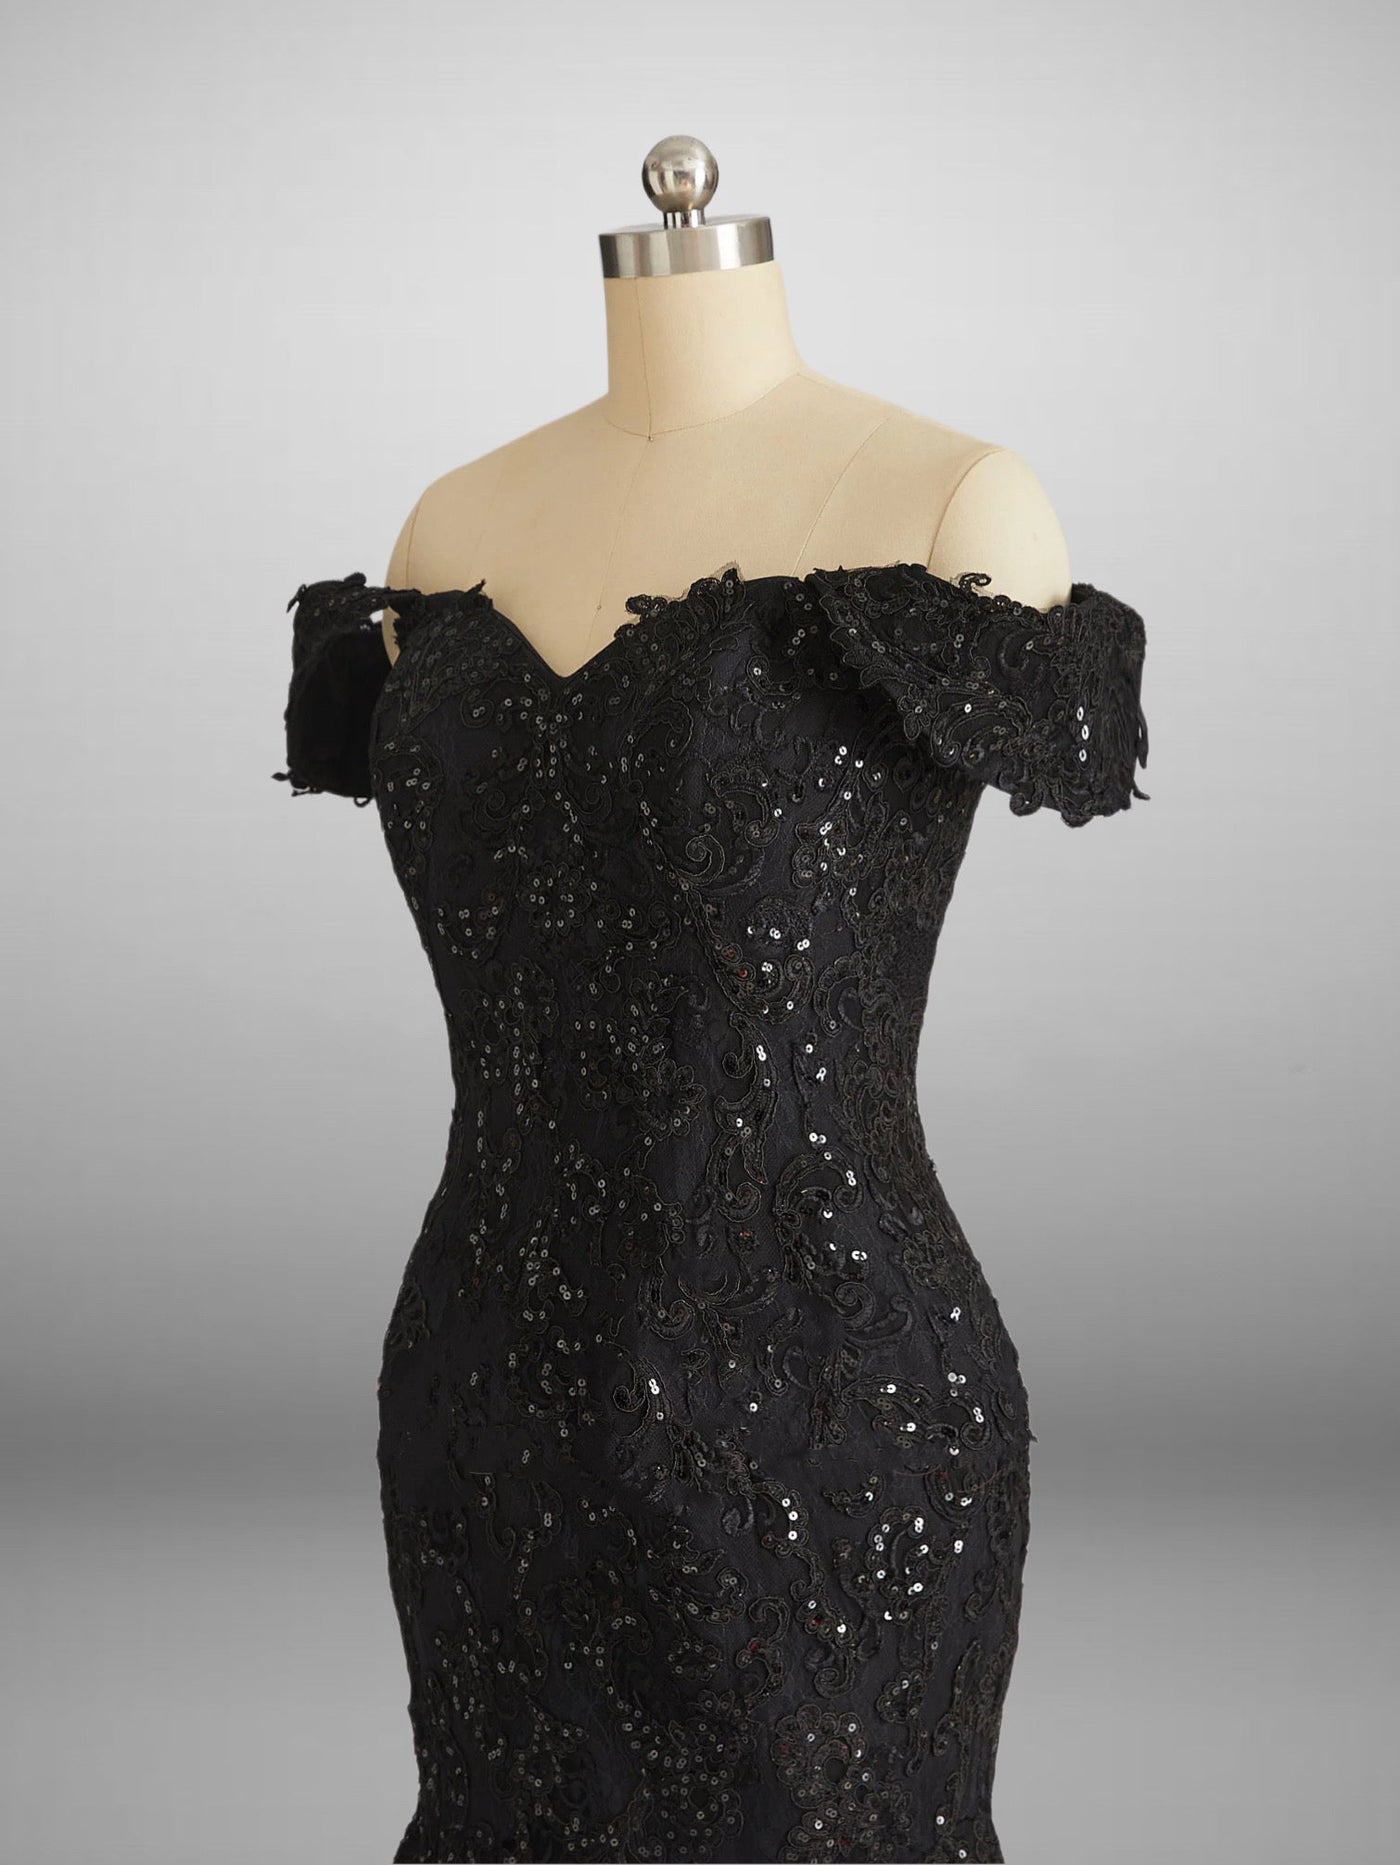 Vintage Inspired Gothic Black Lace Beaded Mermaid Wedding Dress Plus Size - WonderlandByLilian